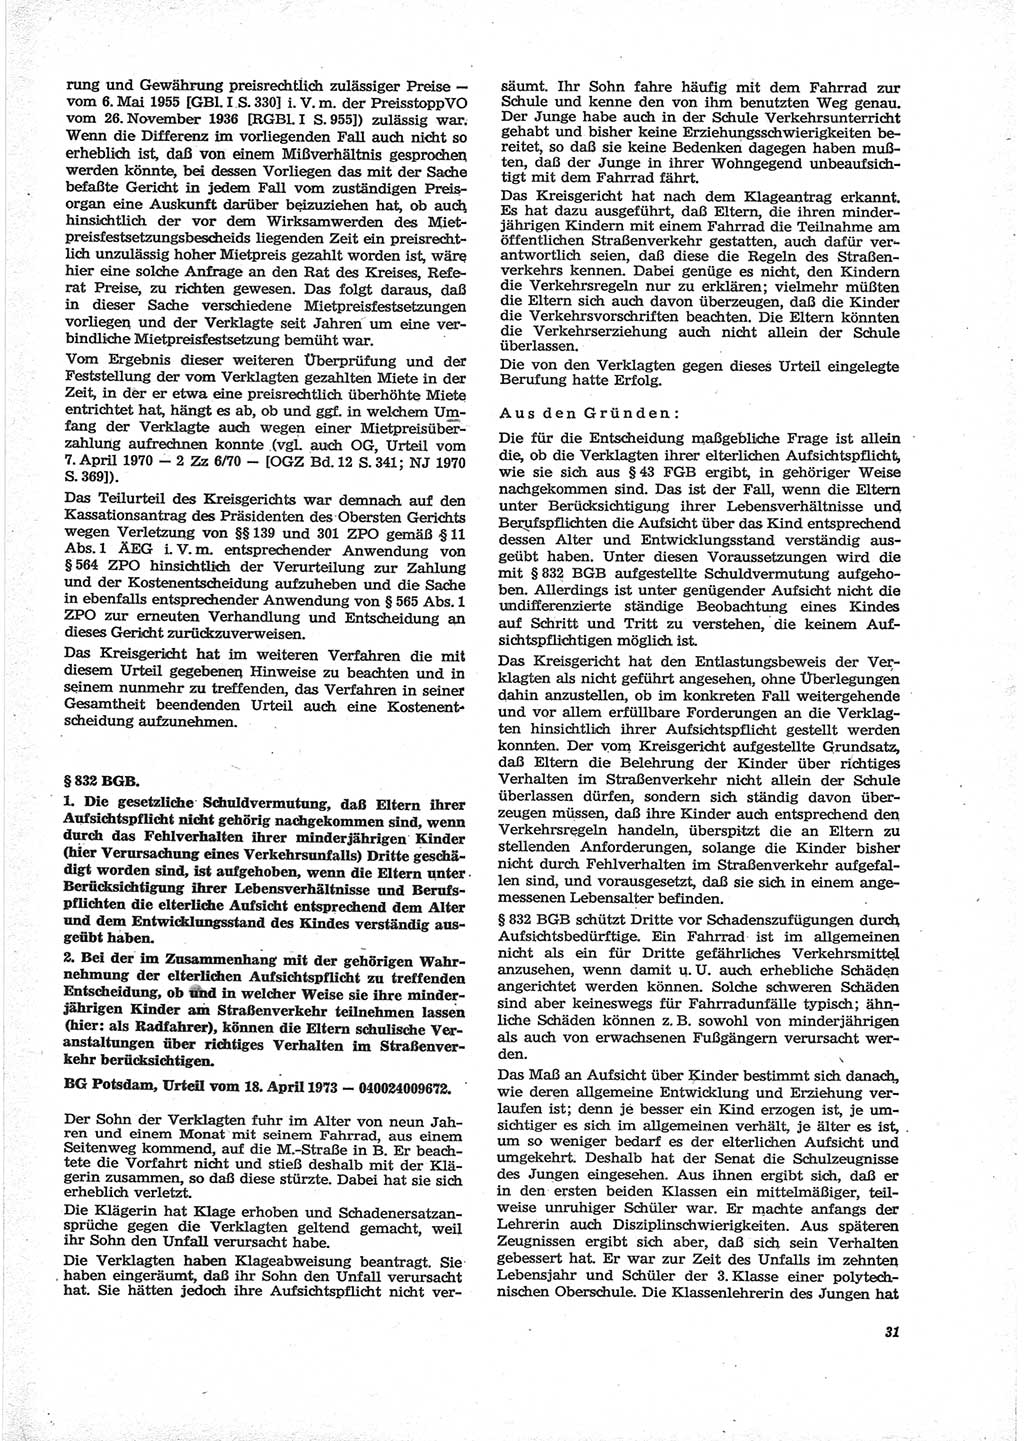 Neue Justiz (NJ), Zeitschrift für Recht und Rechtswissenschaft [Deutsche Demokratische Republik (DDR)], 28. Jahrgang 1974, Seite 31 (NJ DDR 1974, S. 31)